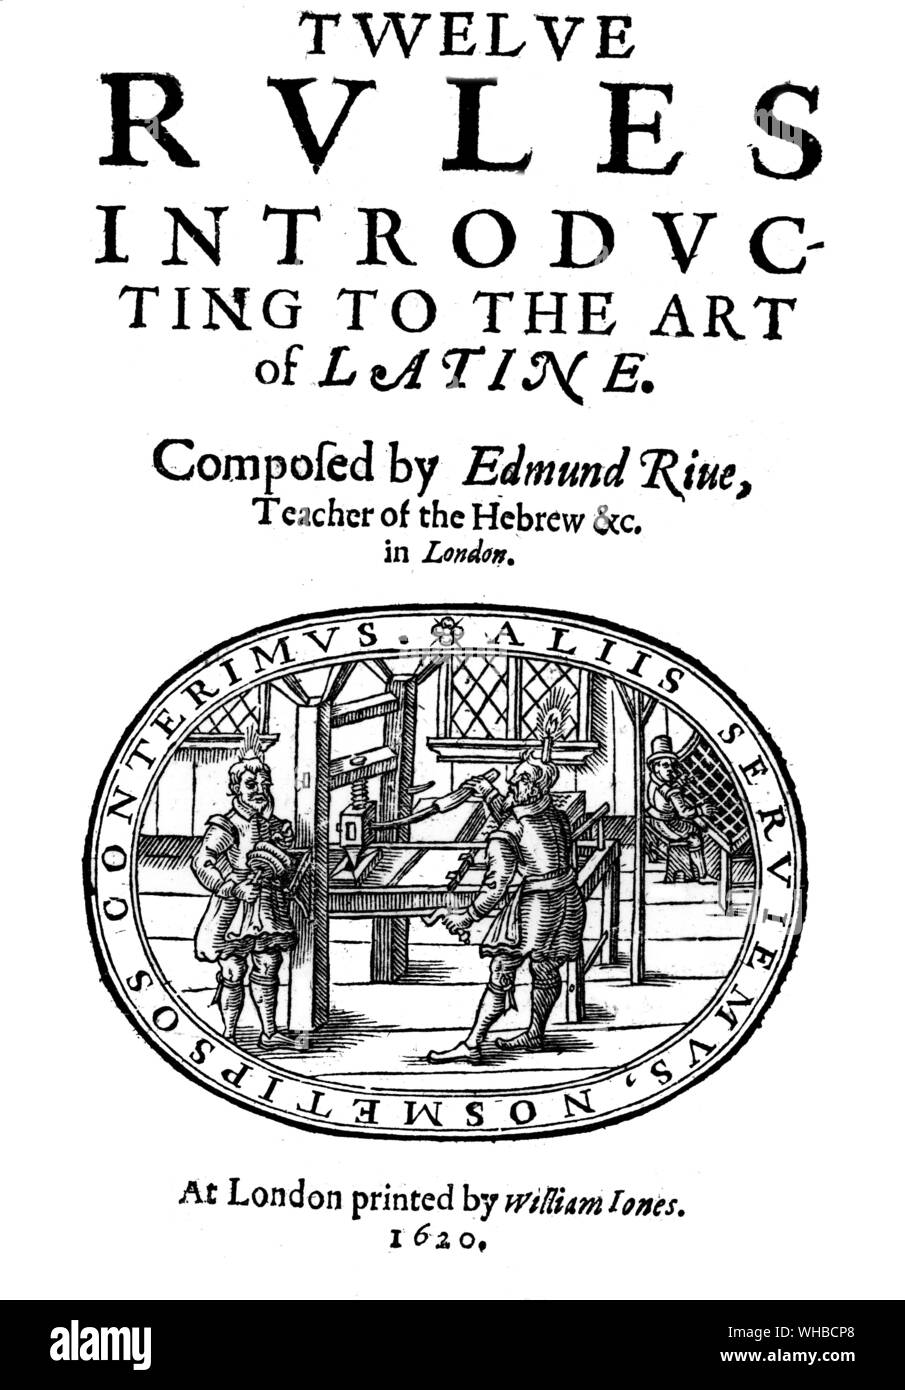 Gravure sur bois à partir de la page de titre de règles de présentation 12 à l'Art de Lactine par Edmund Rive , 1622 Banque D'Images